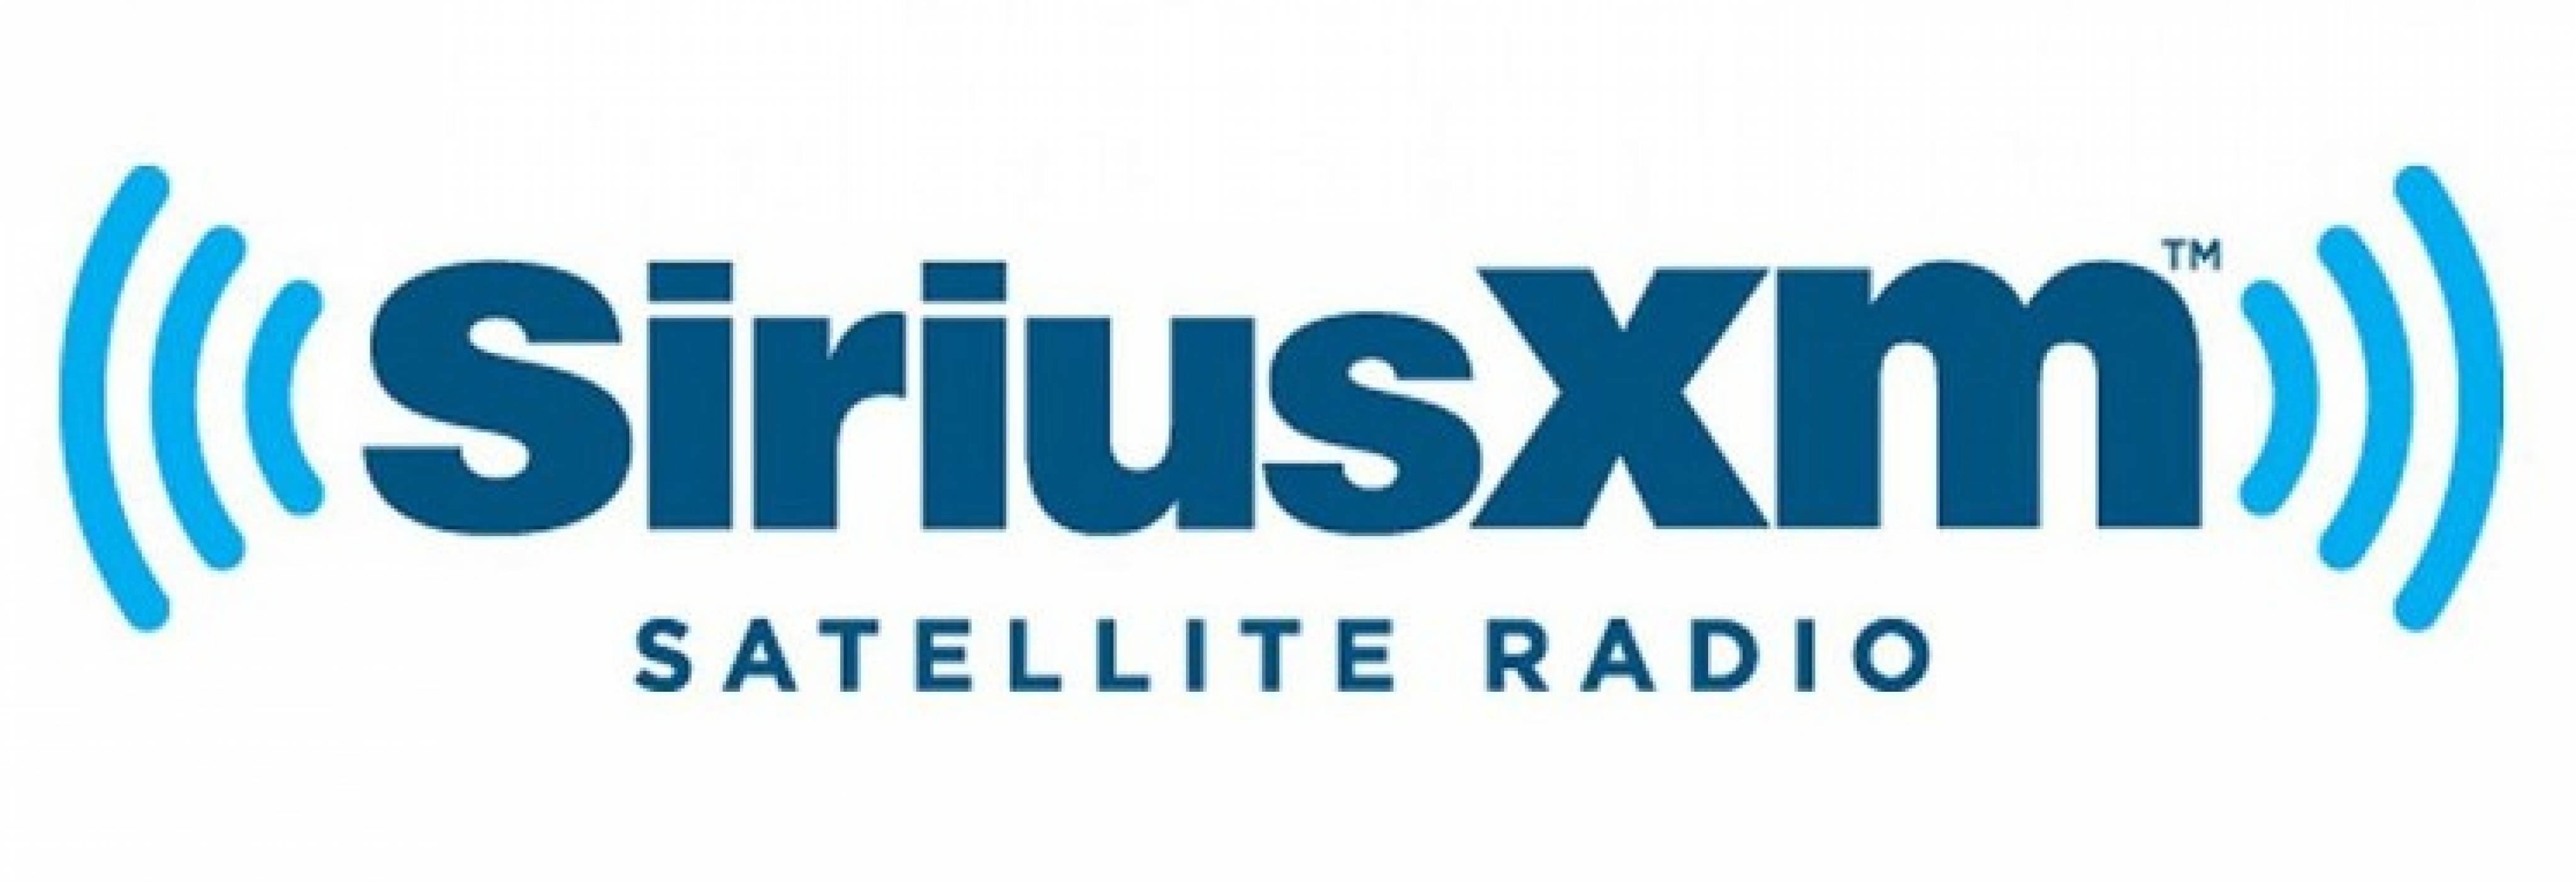 Най-голямото сателитно радио закупи стрийминг услугата Pandora